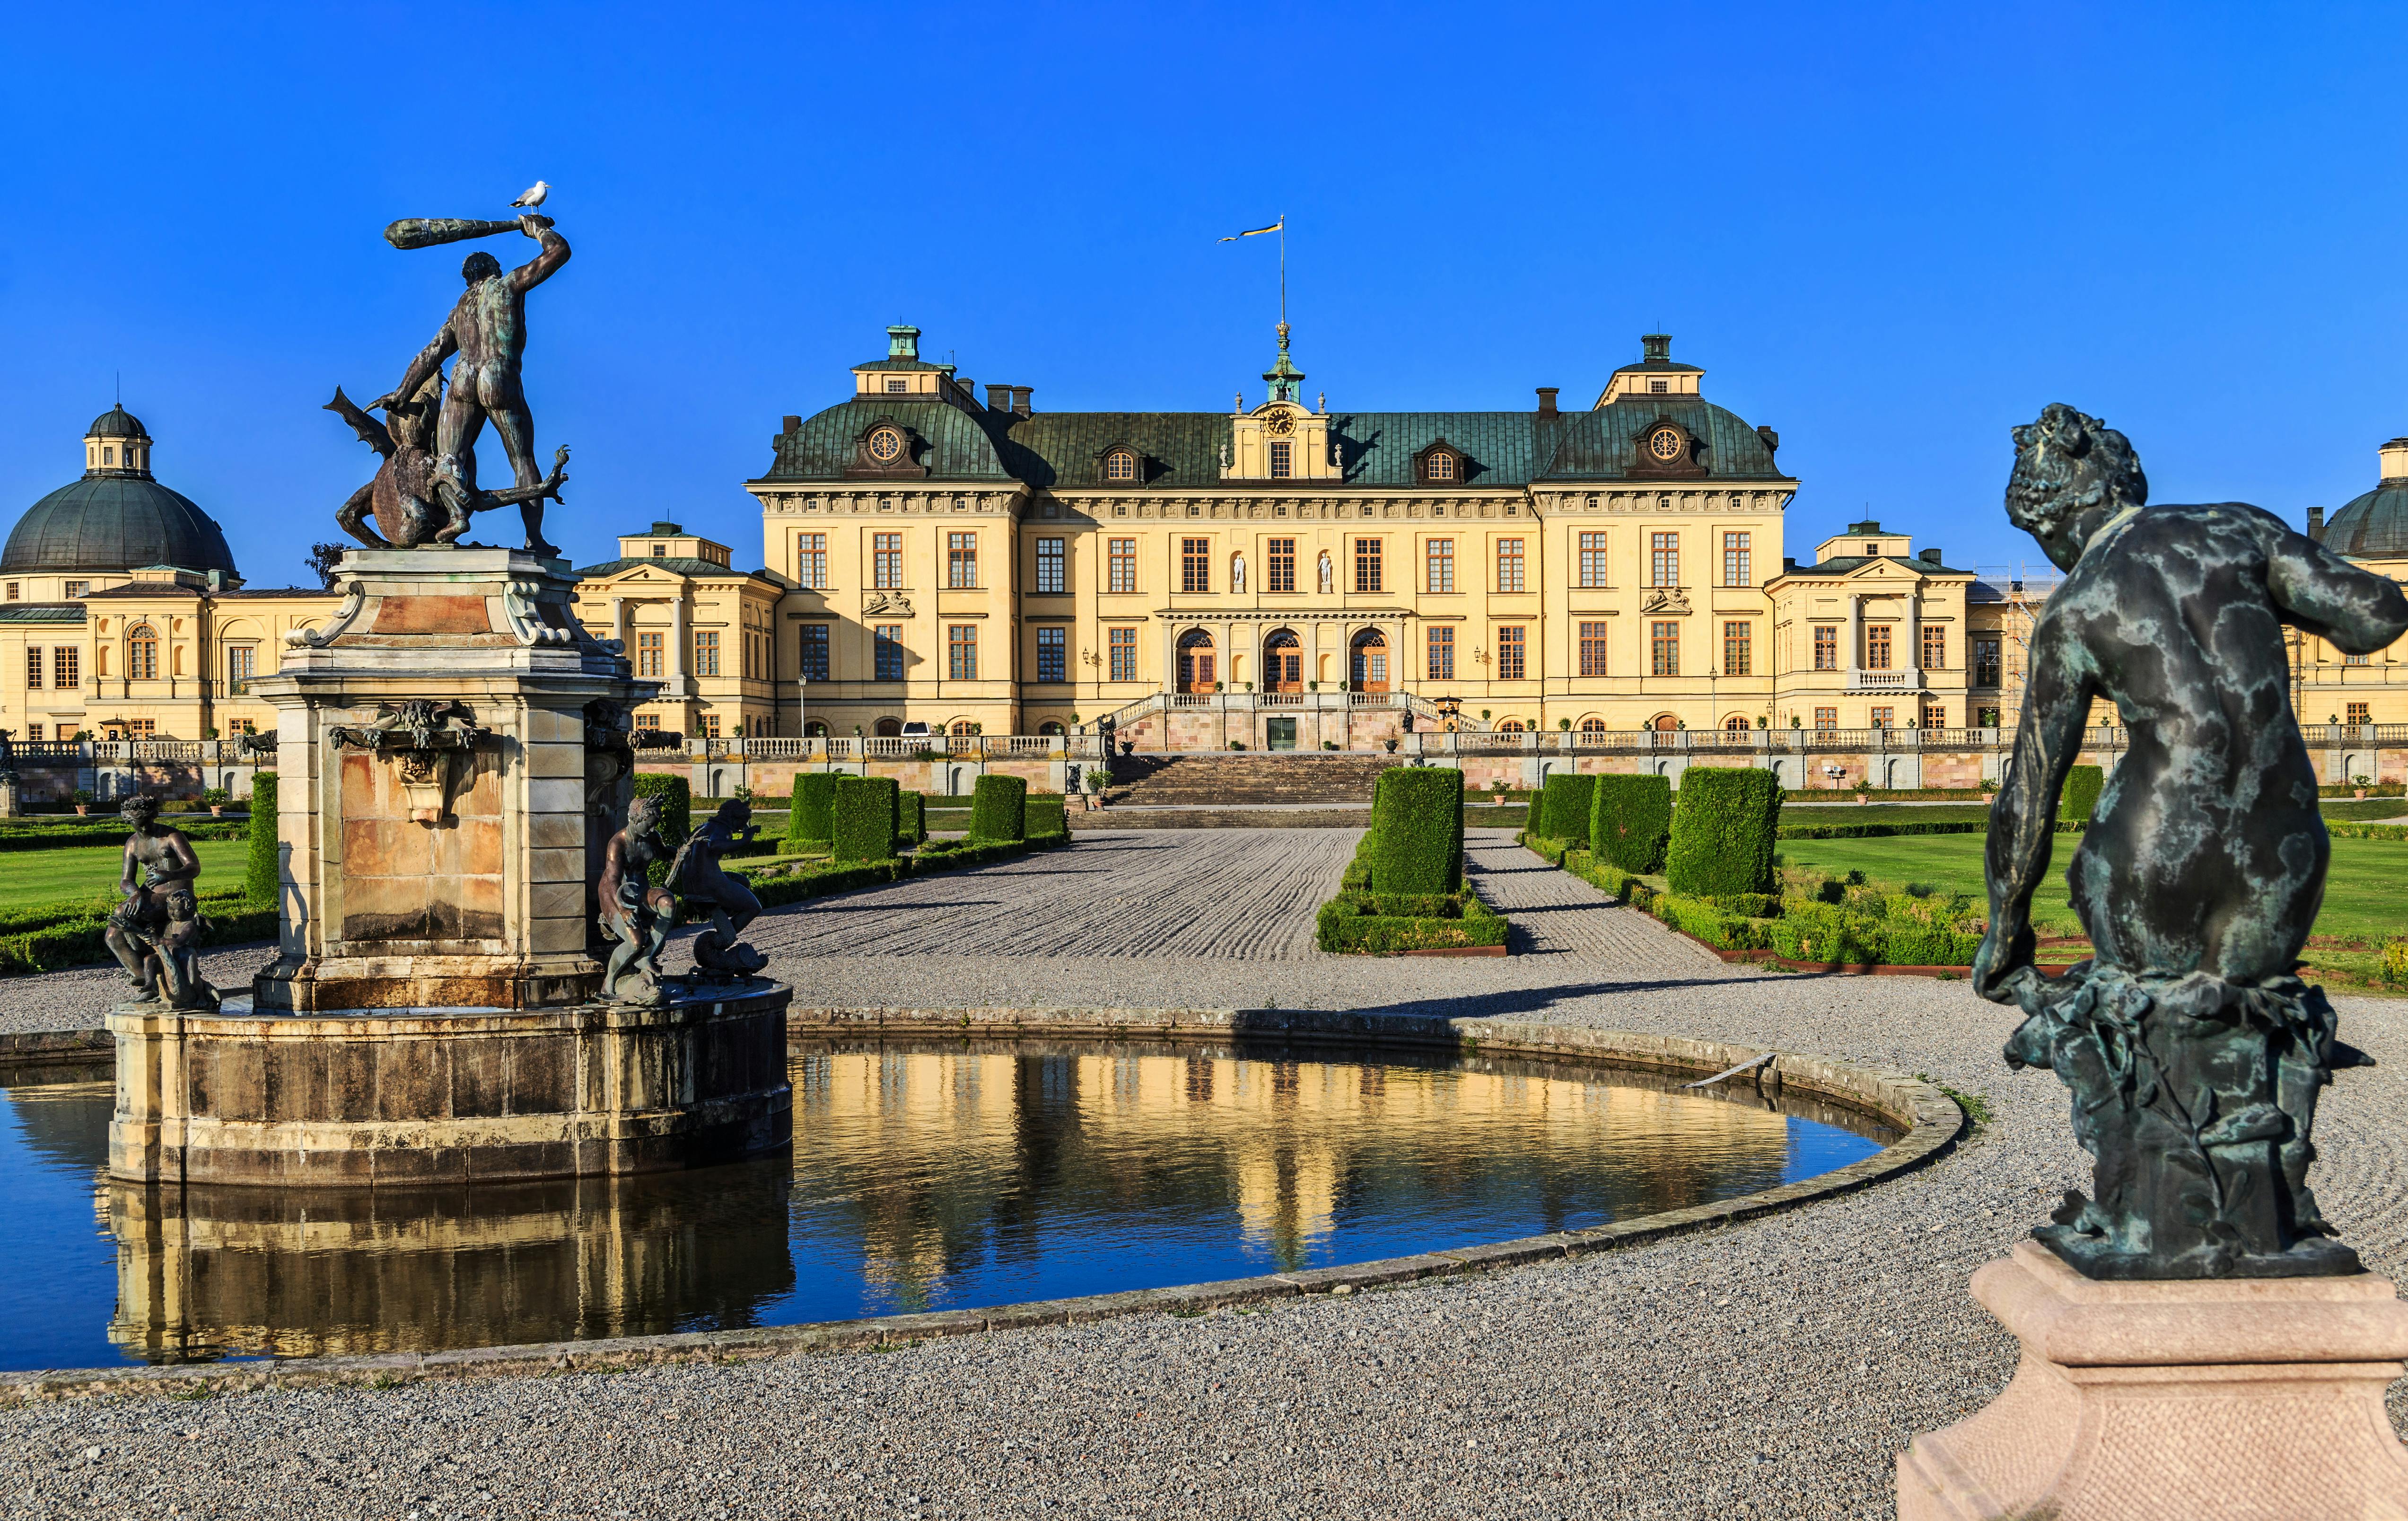 Halbtägige Stockholm-Tour mit Schloss Drottningholm